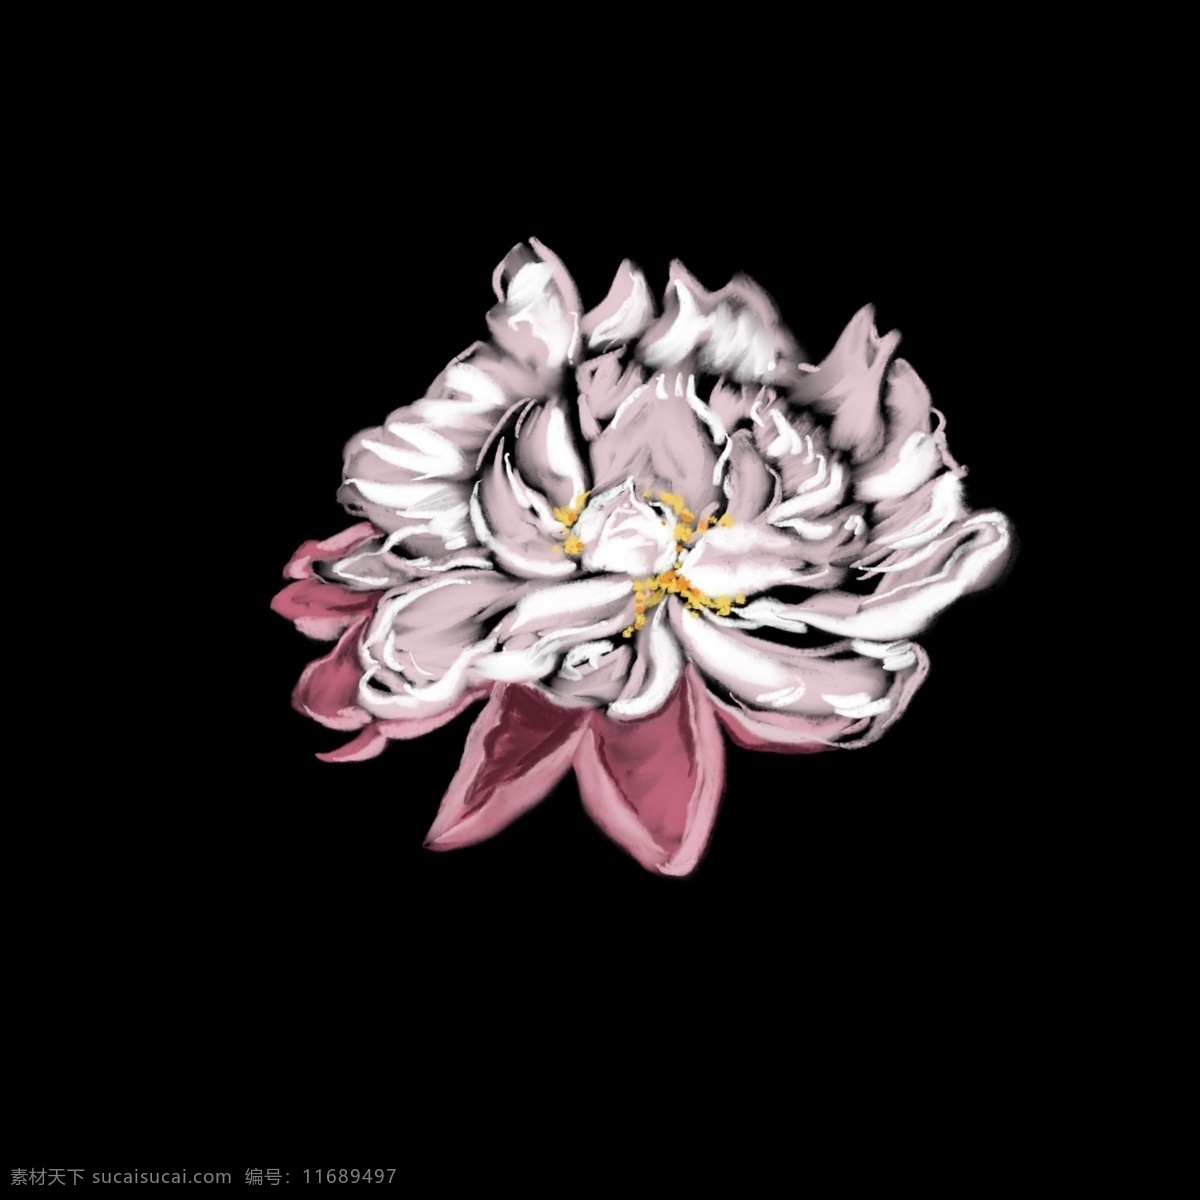 白色 牡丹 写实 花朵 绘画 牡丹花 插画 手绘 小清新 新鲜花朵 写实绘画 传统装饰 唯美意境 清新自然